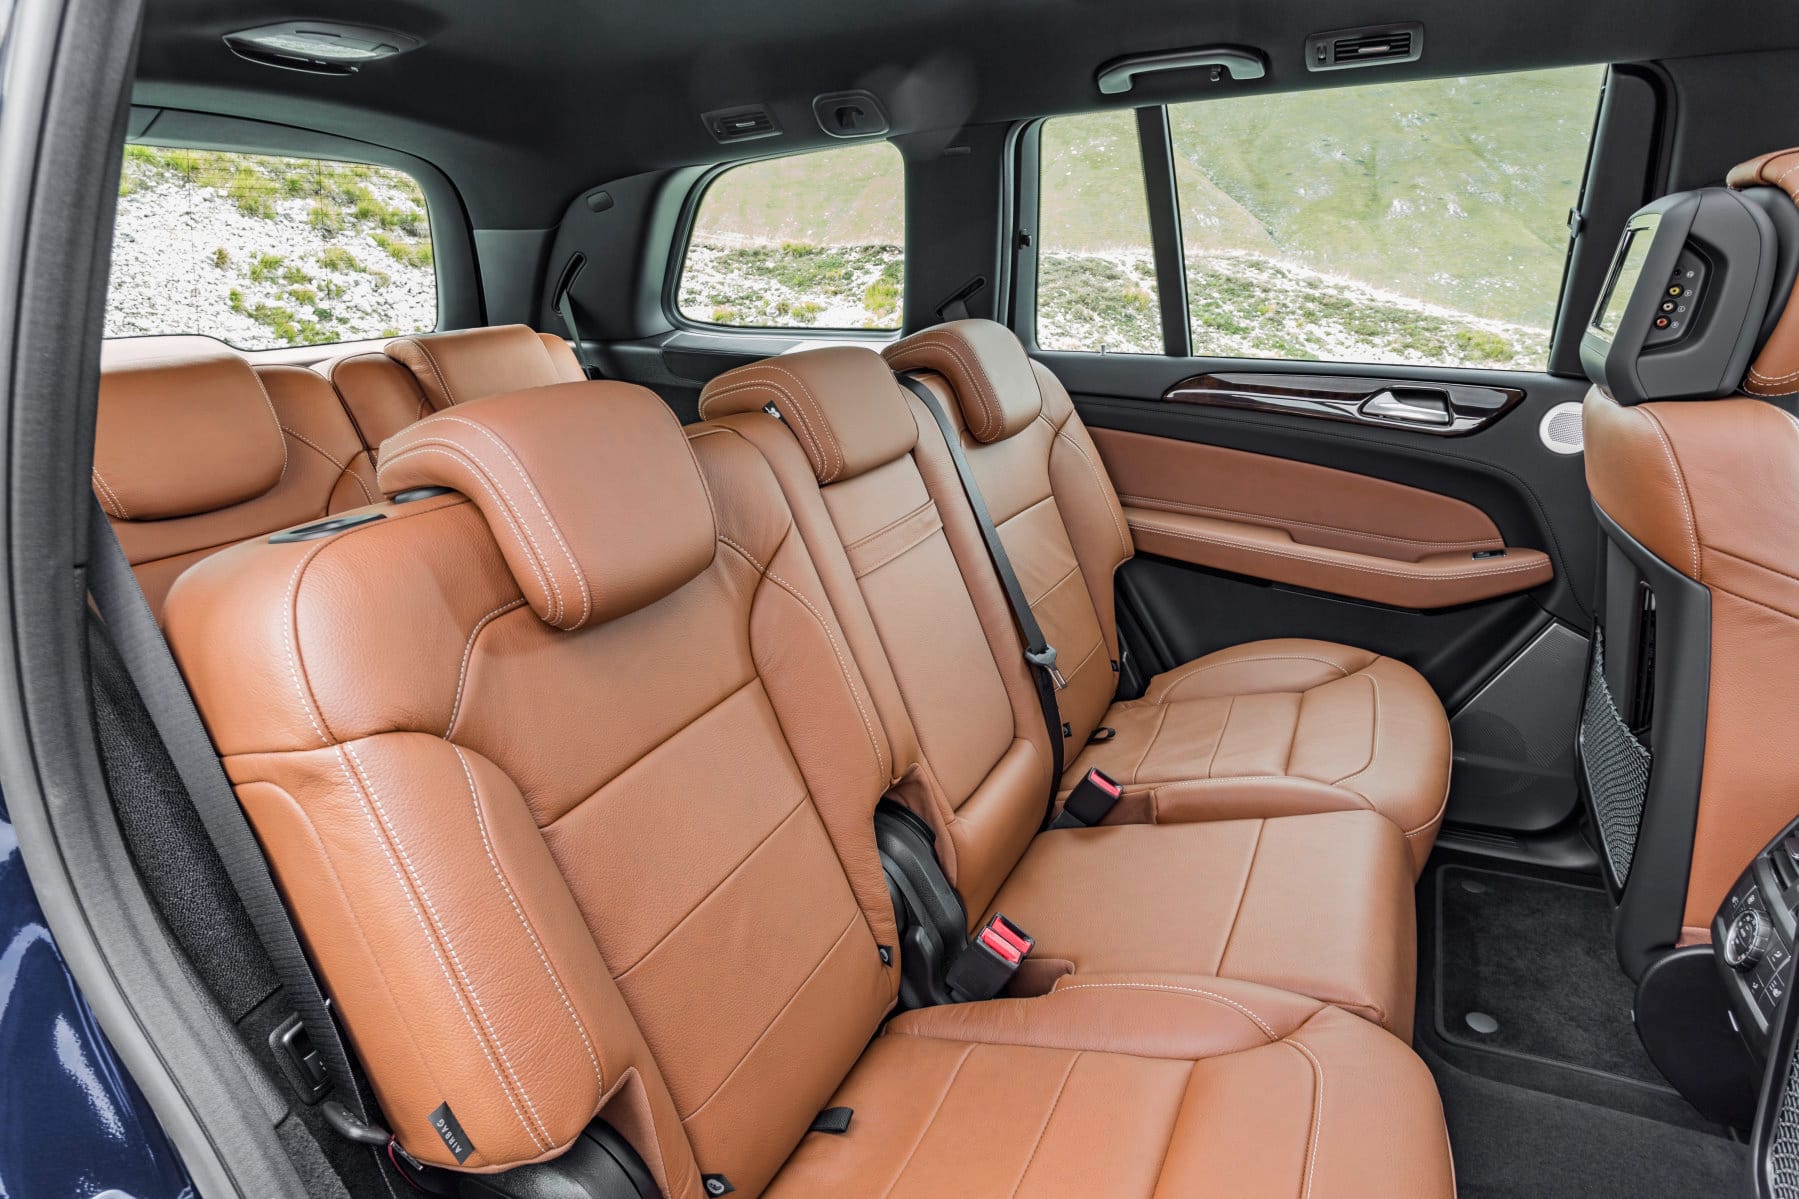 Eine optionale Einzelsitzanlage, wie sie die beiden Hauptkonkurrenten Range Rover und Bentley Bentayga bieten, gibt es im GLS nicht.